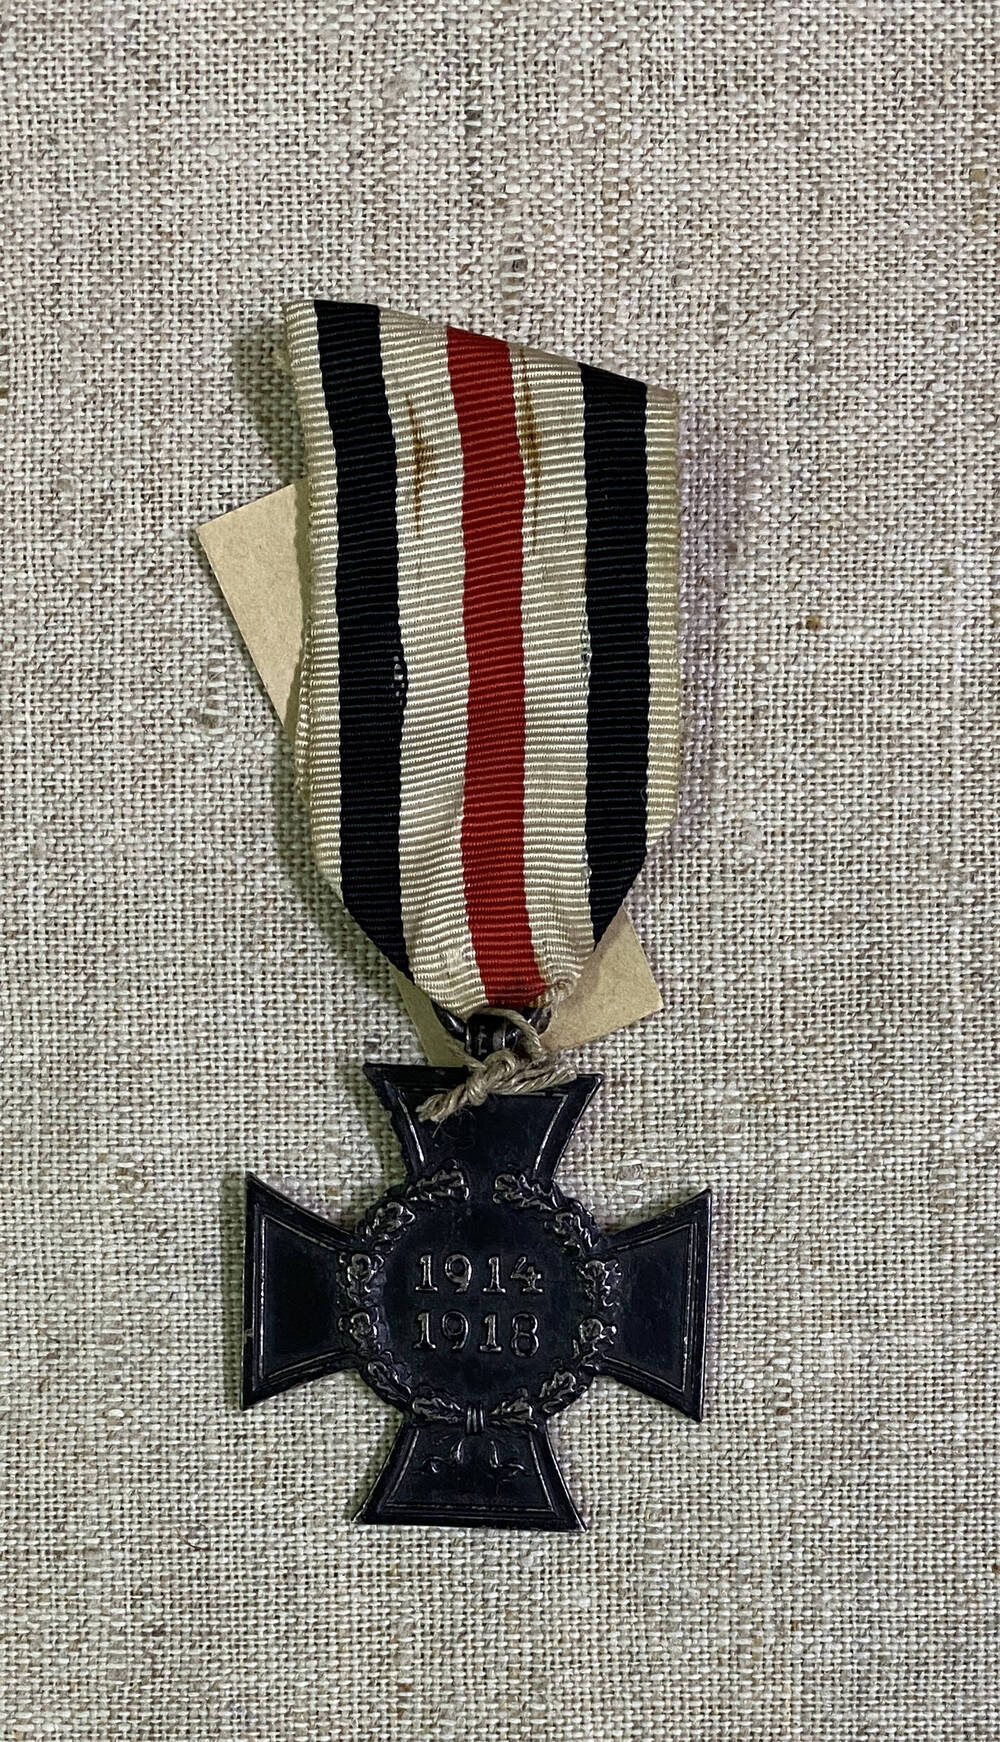 Орден Австро-Венгерской империи в форме креста, цифры 1914 1918 в обрамлении дубового венка. На муаровой ленте